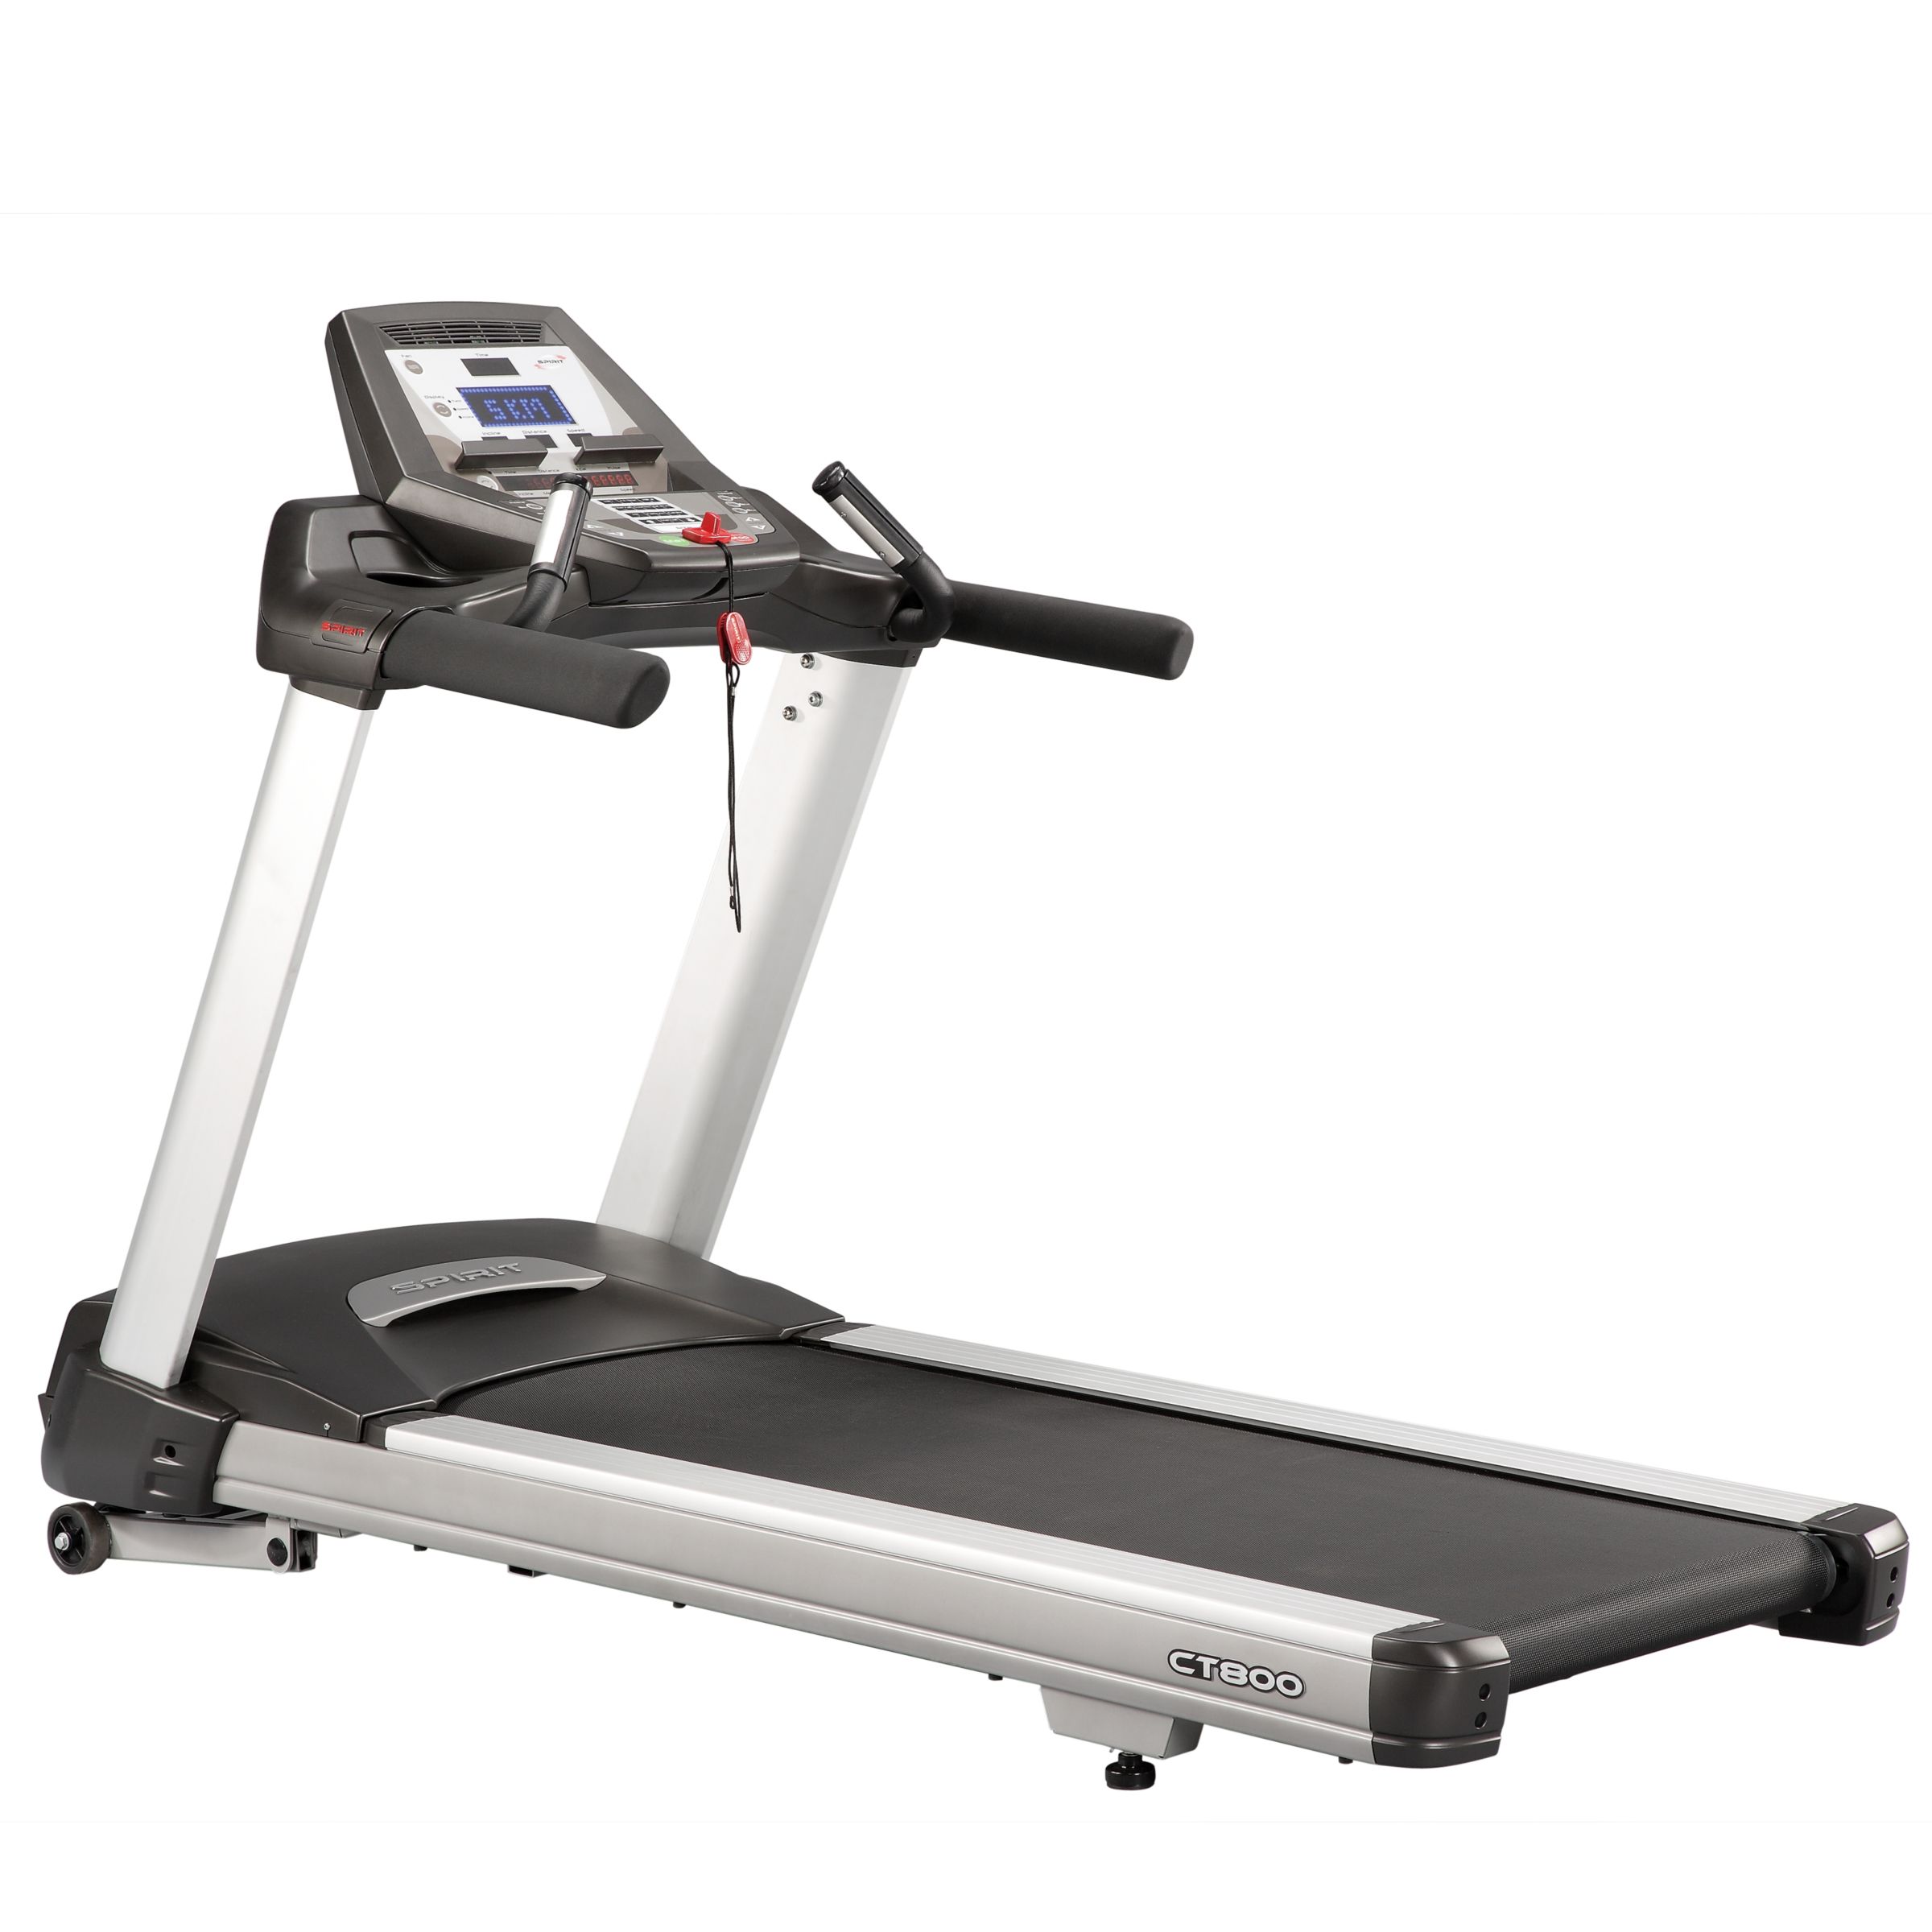 Spirit Fitness CT800 Club Series Treadmill at John Lewis